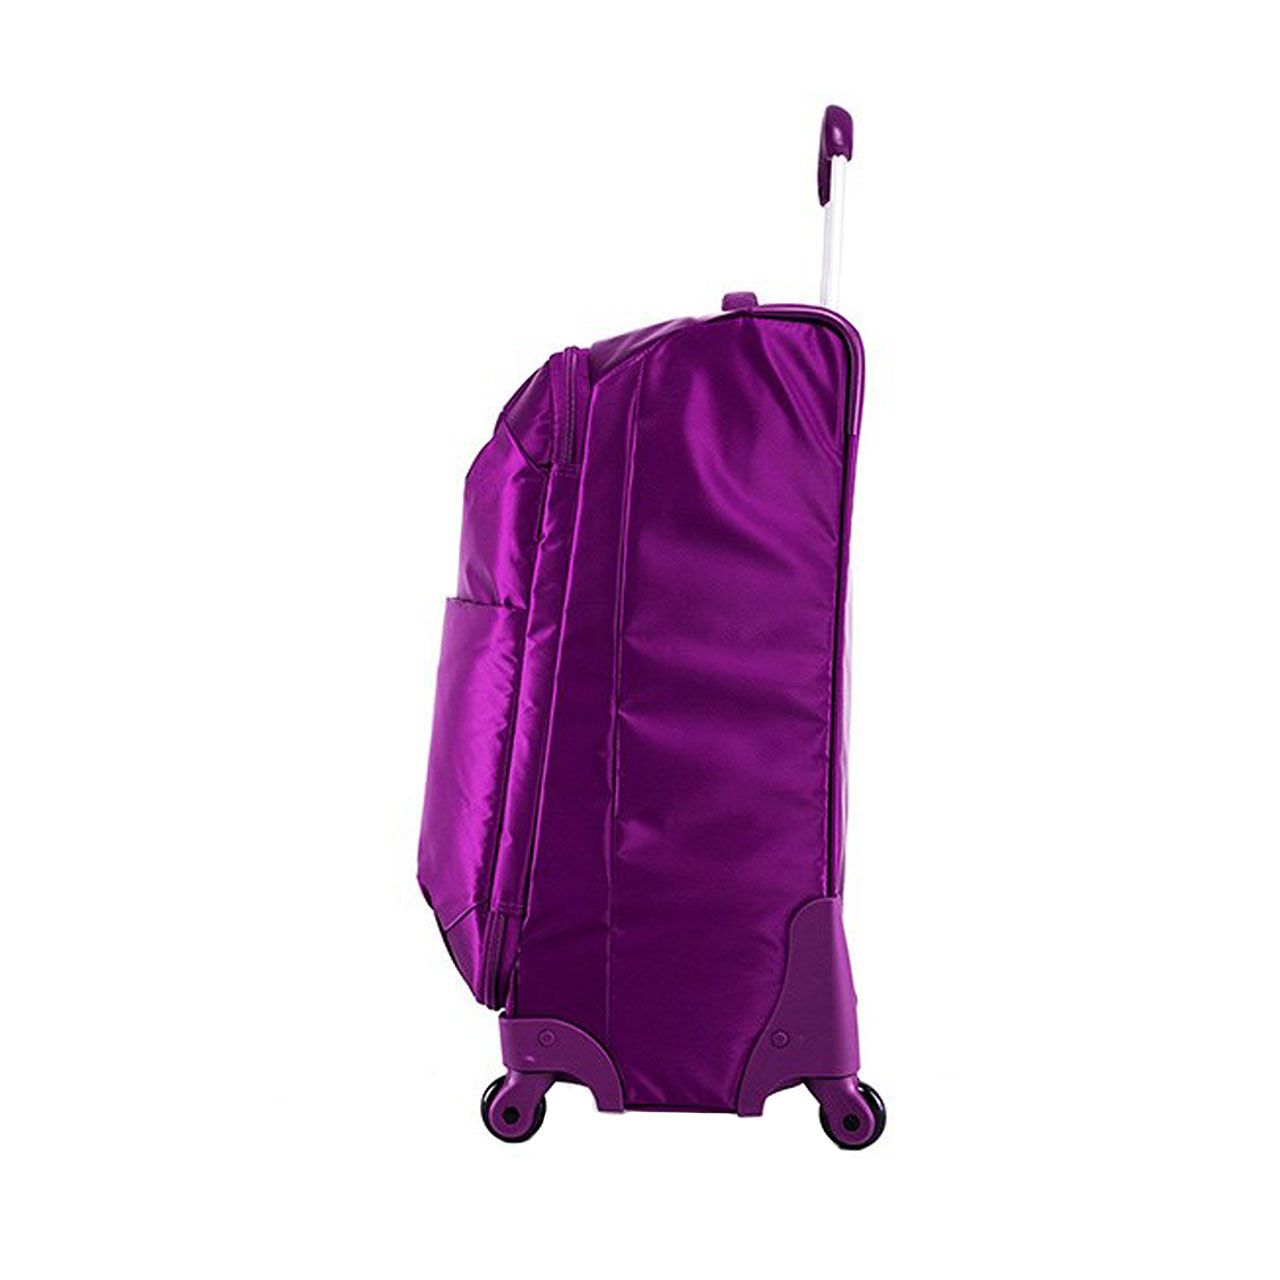 چمدان دلسی مدل فوروانس سایز متوسط کد 2372810 -  - 1